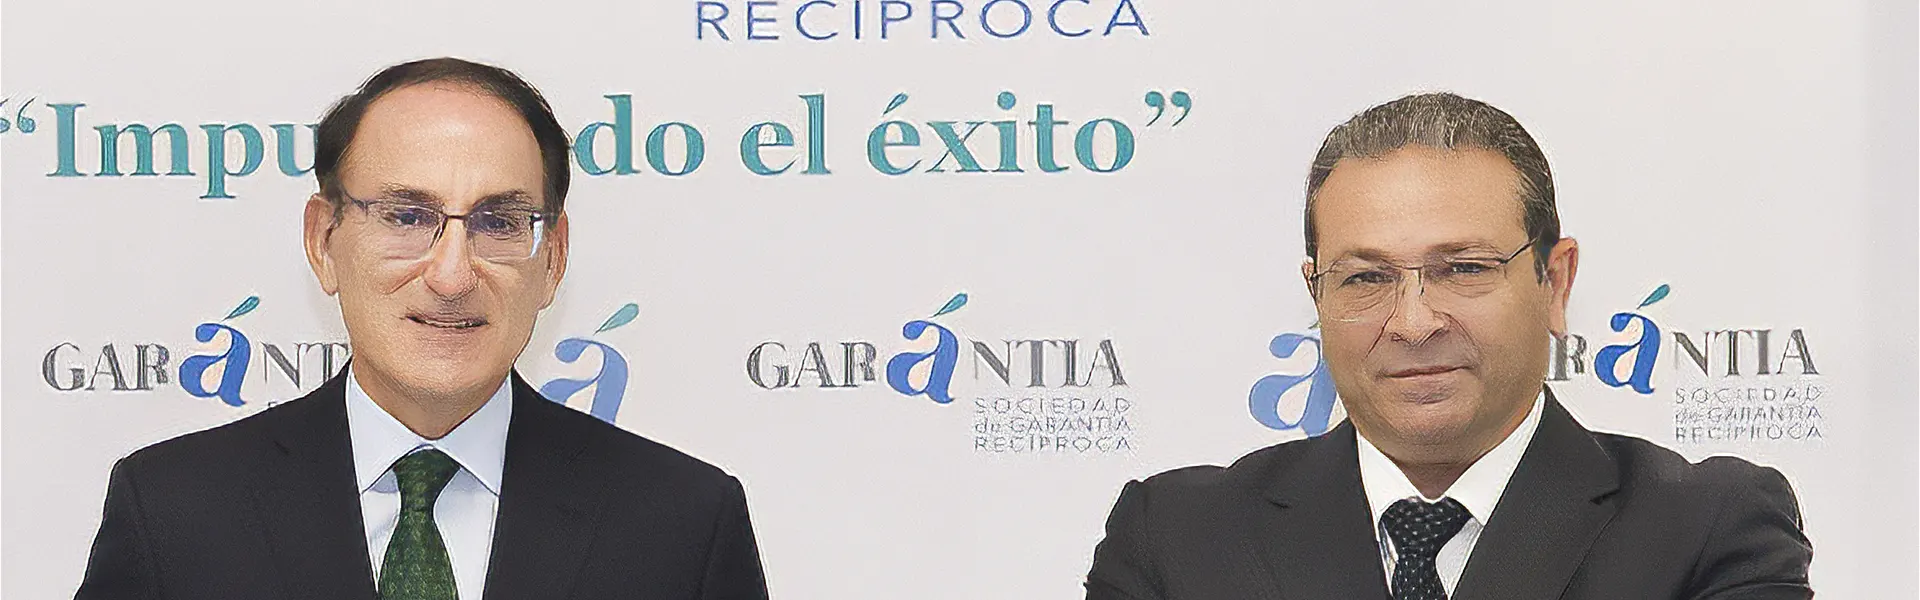 Garántia avanza en Málaga y lidera en financiación al sector agroalimentario ultimas noticias cesgar